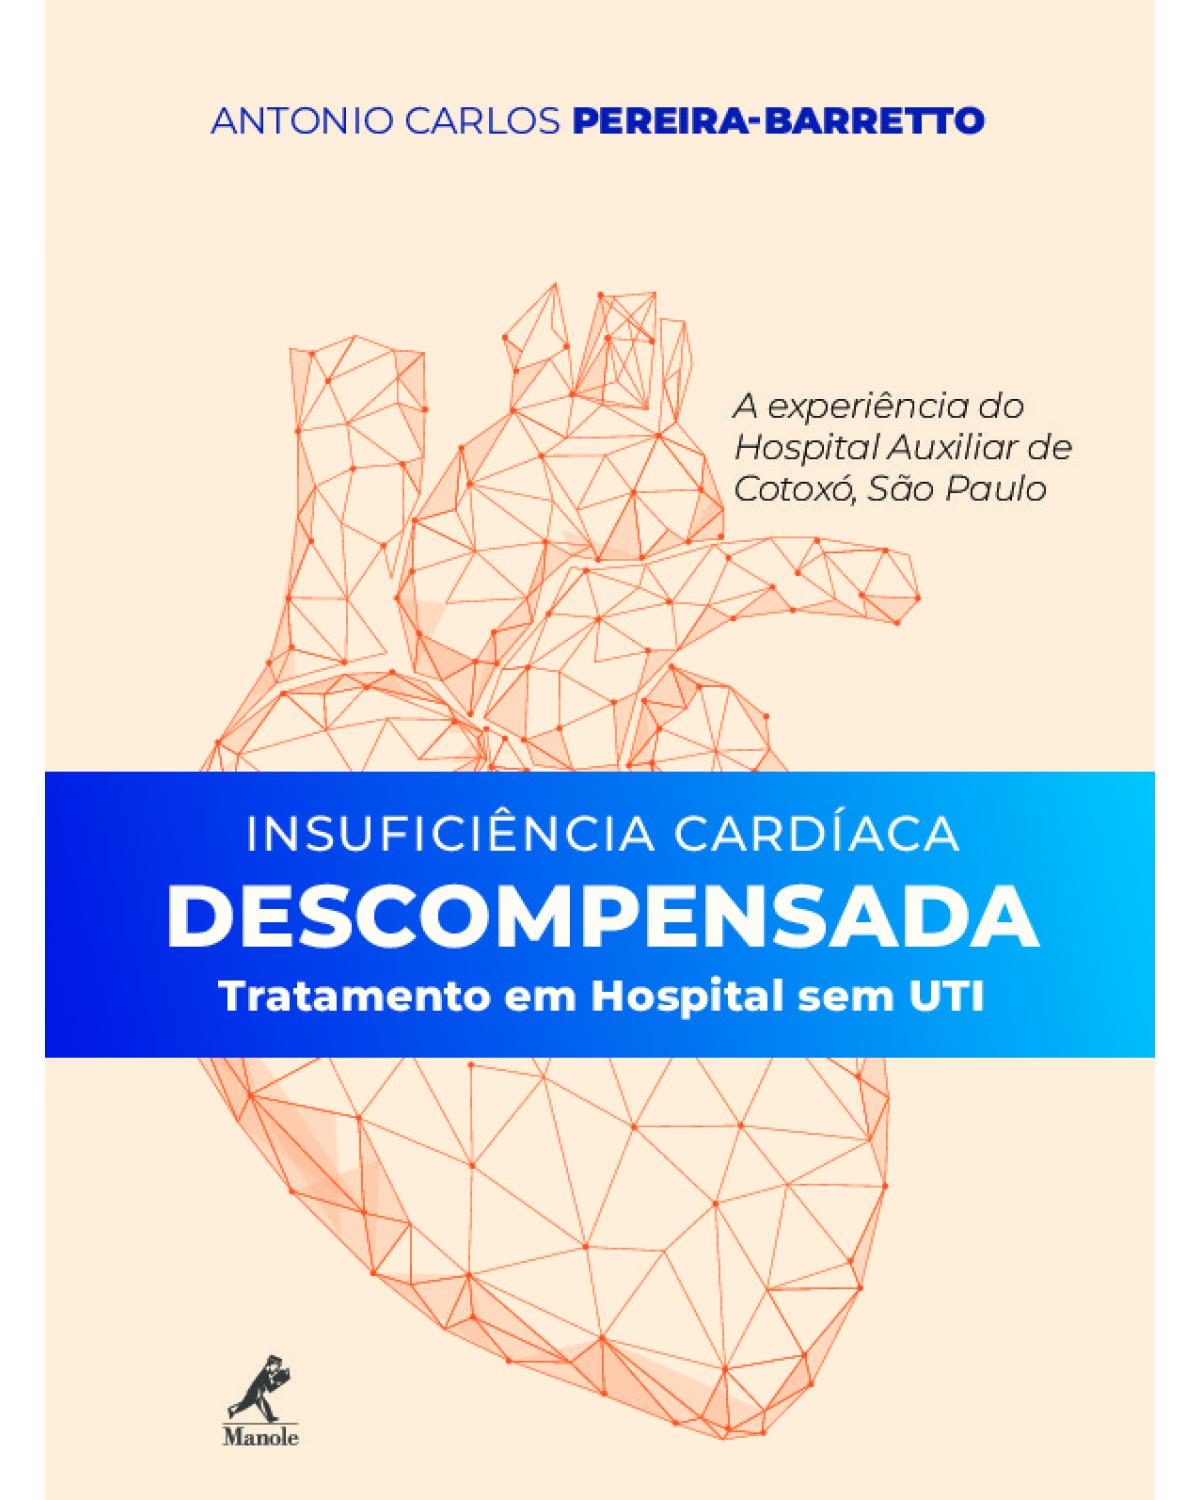 Insuficiência cardíaca descompensada - tratamento em hospital sem UTI - a experiência do Hospital Auxiliar de Cotoxó - 1ª Edição | 2019